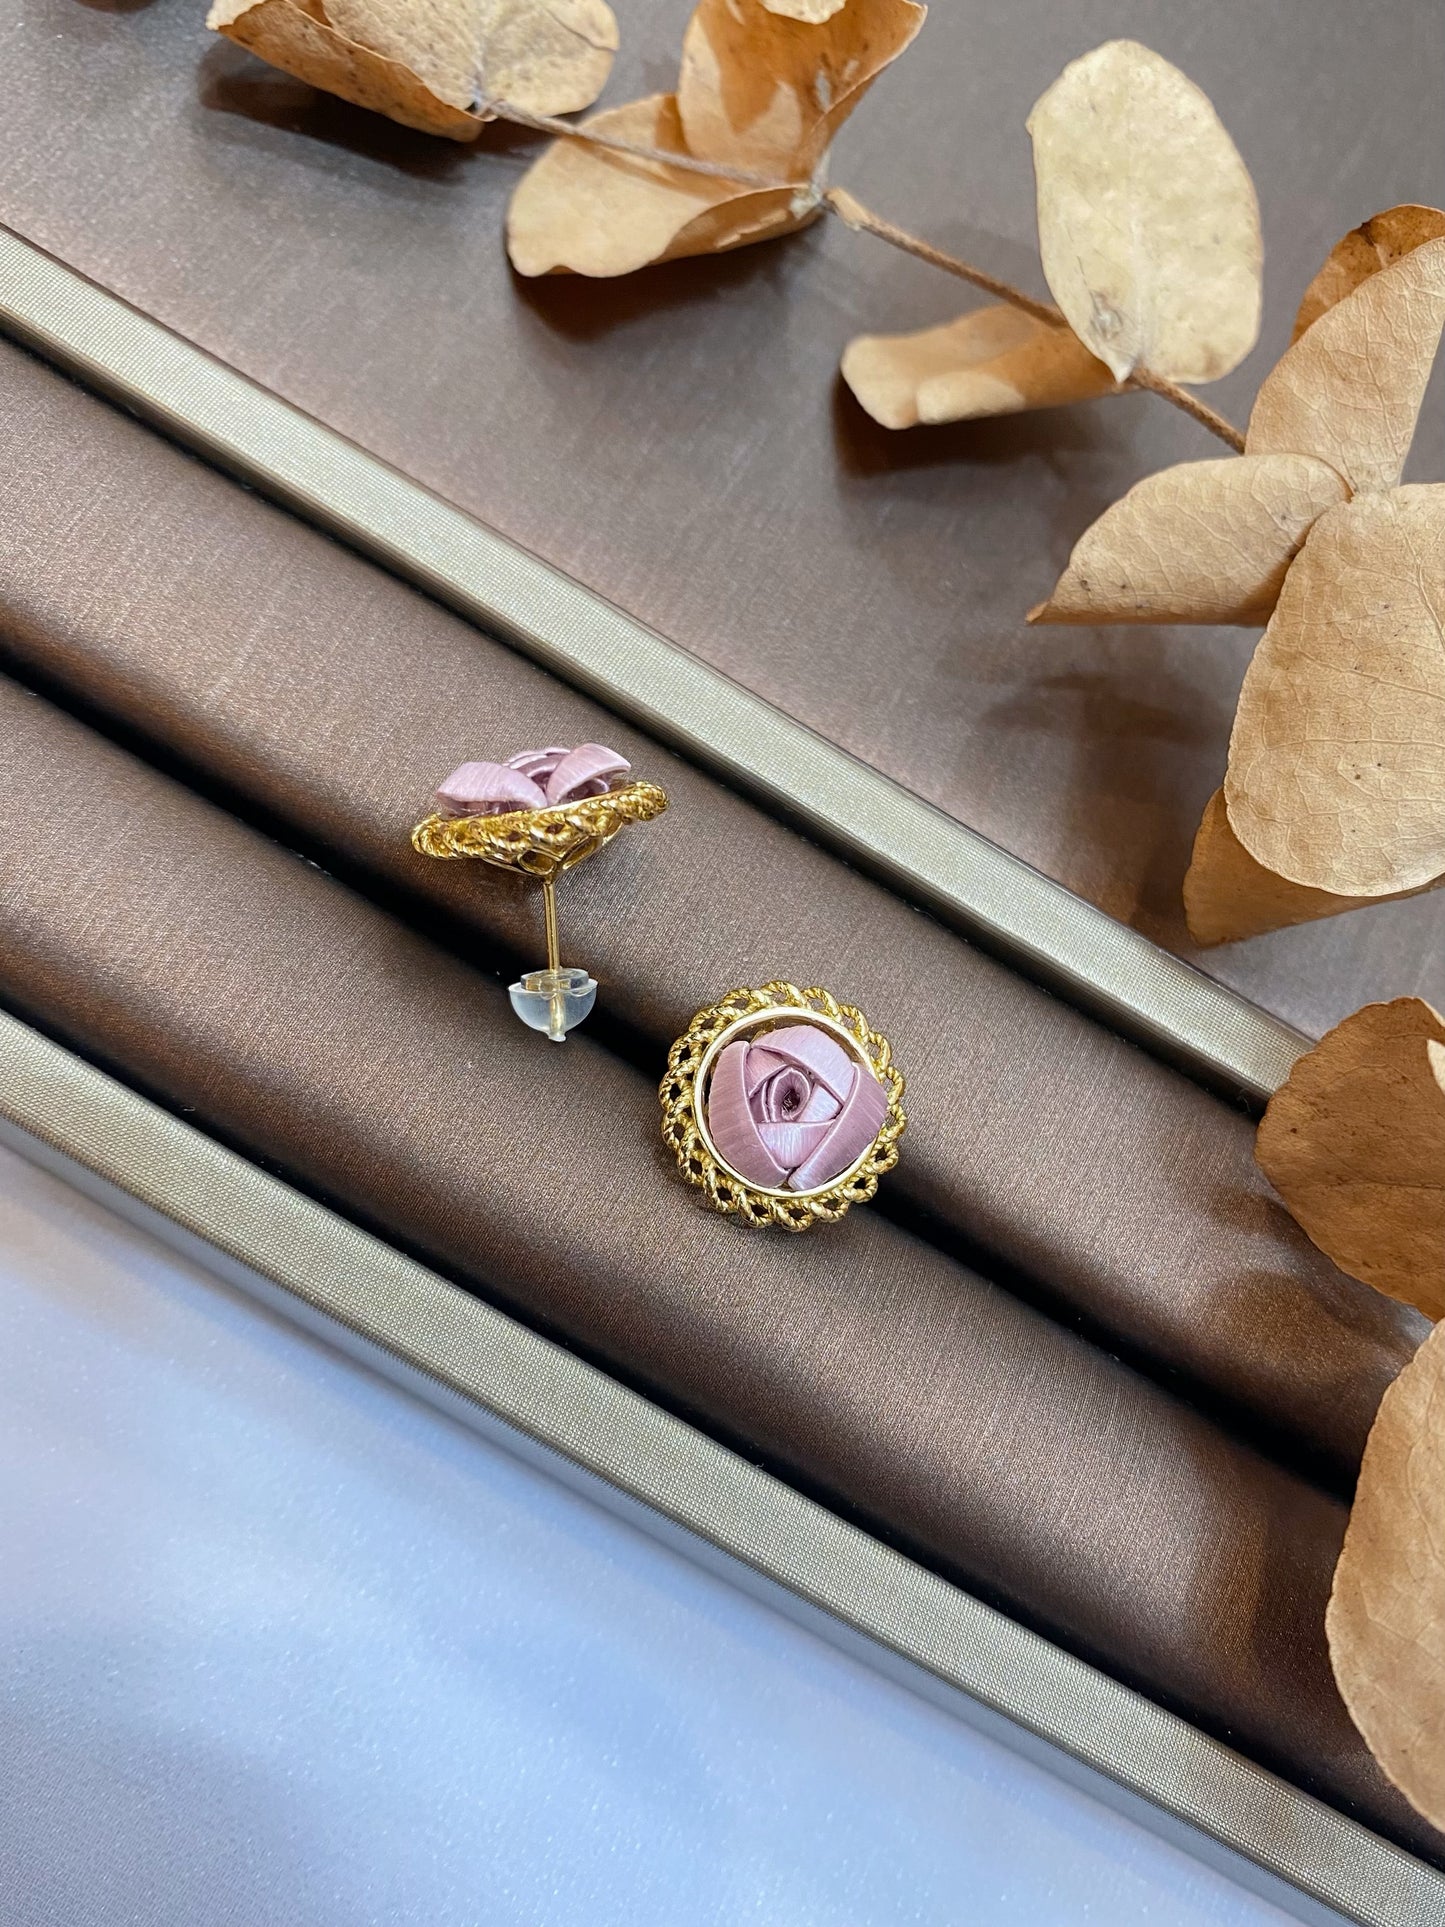 Champagne Gold : MIst Purple Little Rose Earrings 